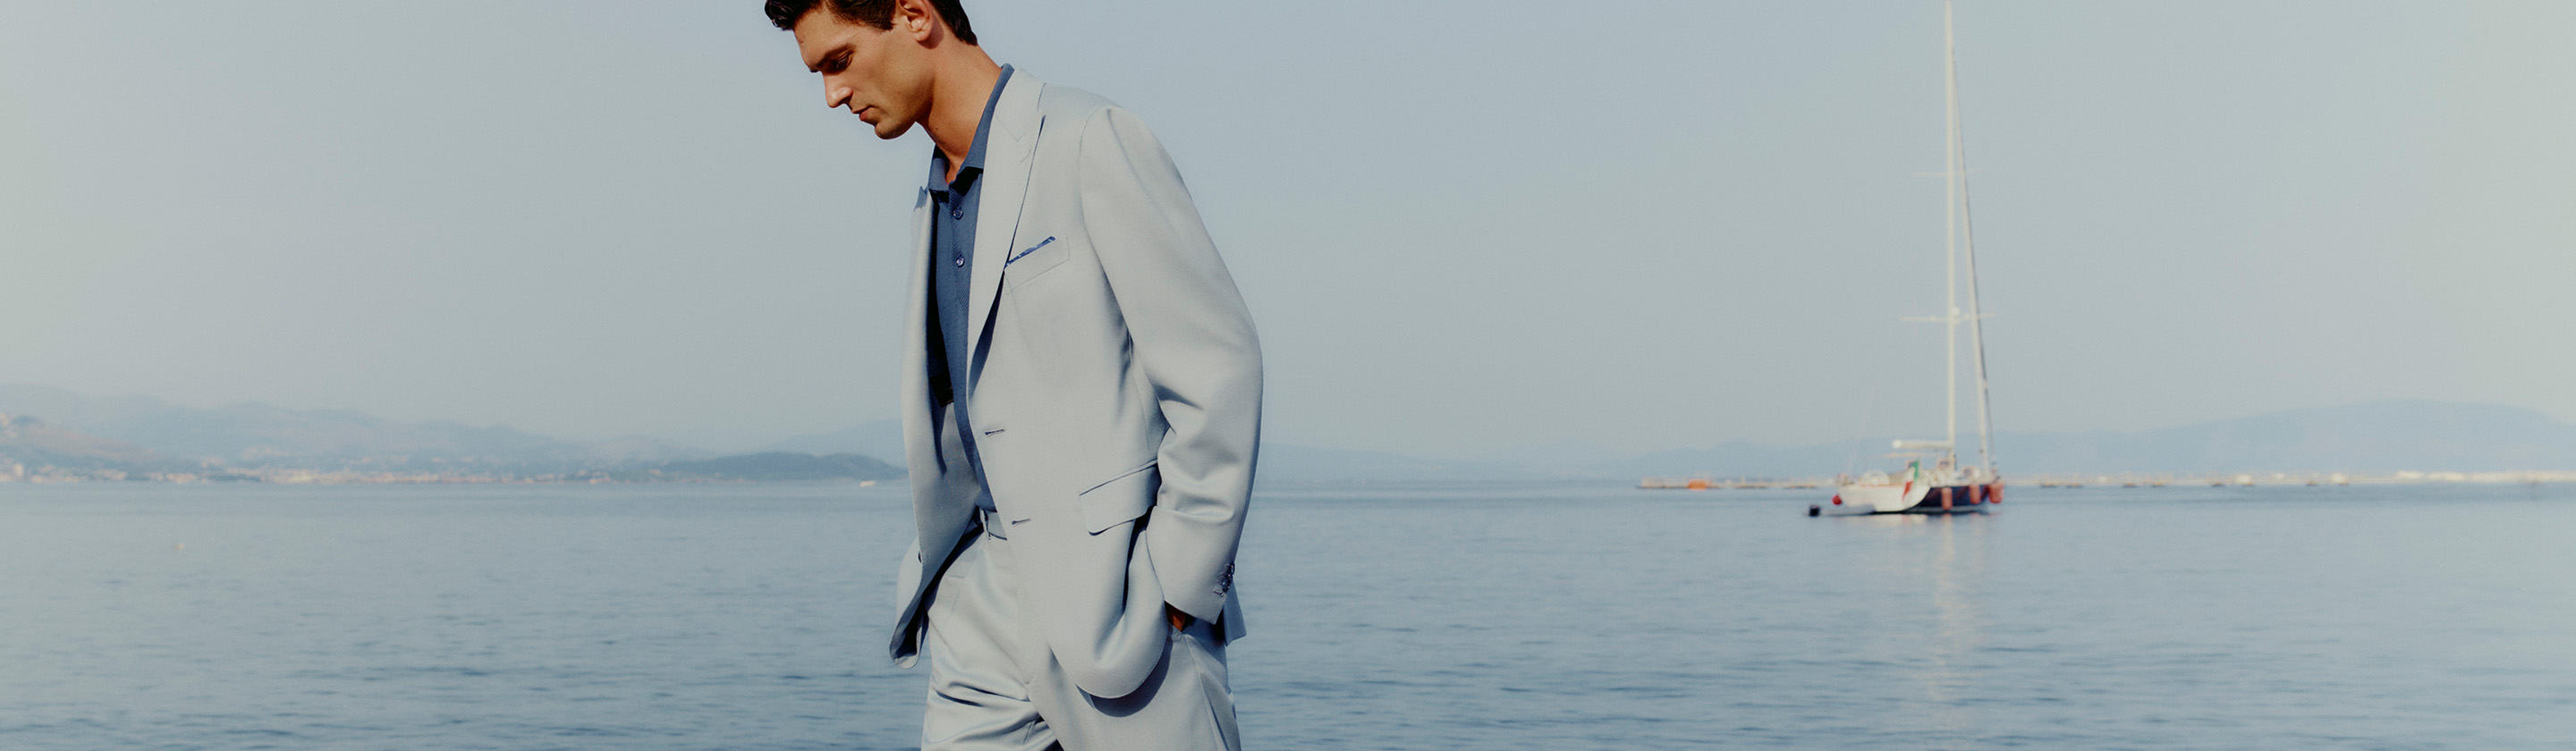 Beach Wedding Attire for Men & Women: Here's What to Wear